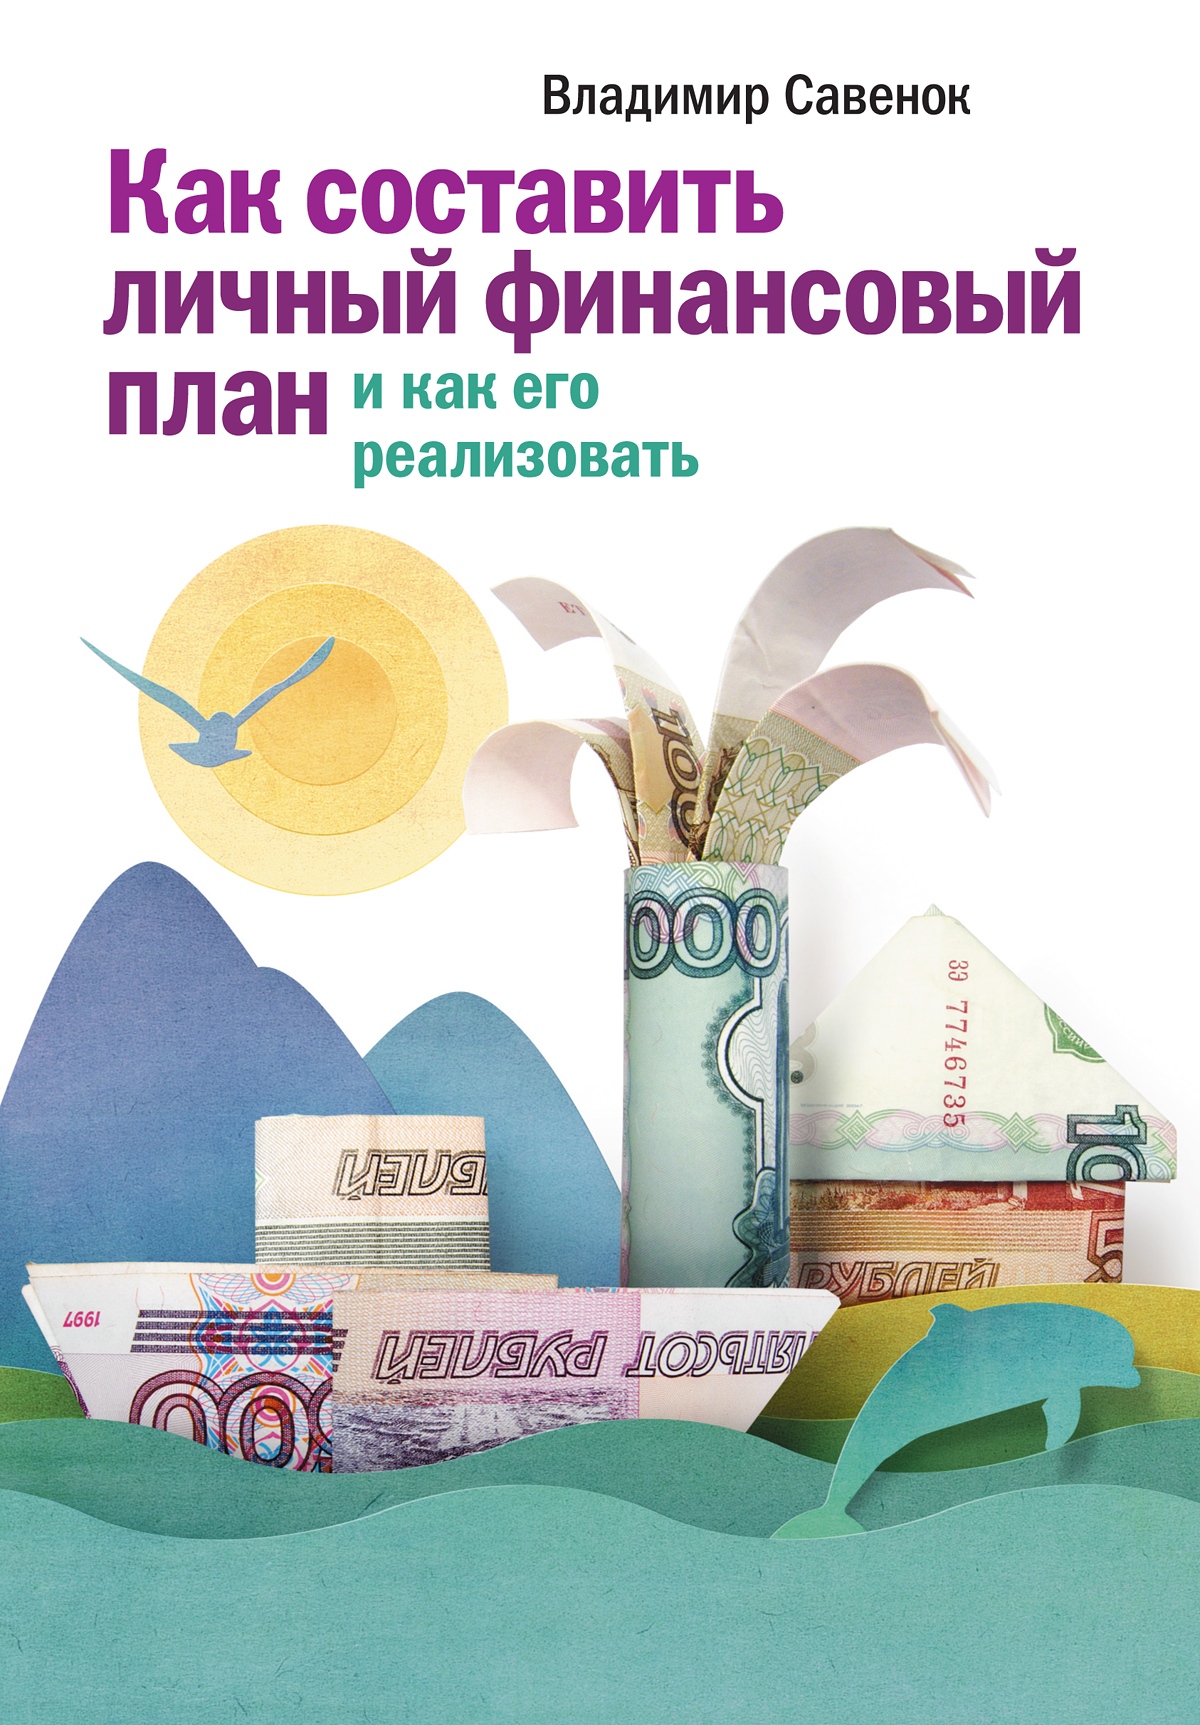 Как составить личный финансовый план и как его реализовать, Владимир  Савенок – скачать книгу fb2, epub, pdf на ЛитРес